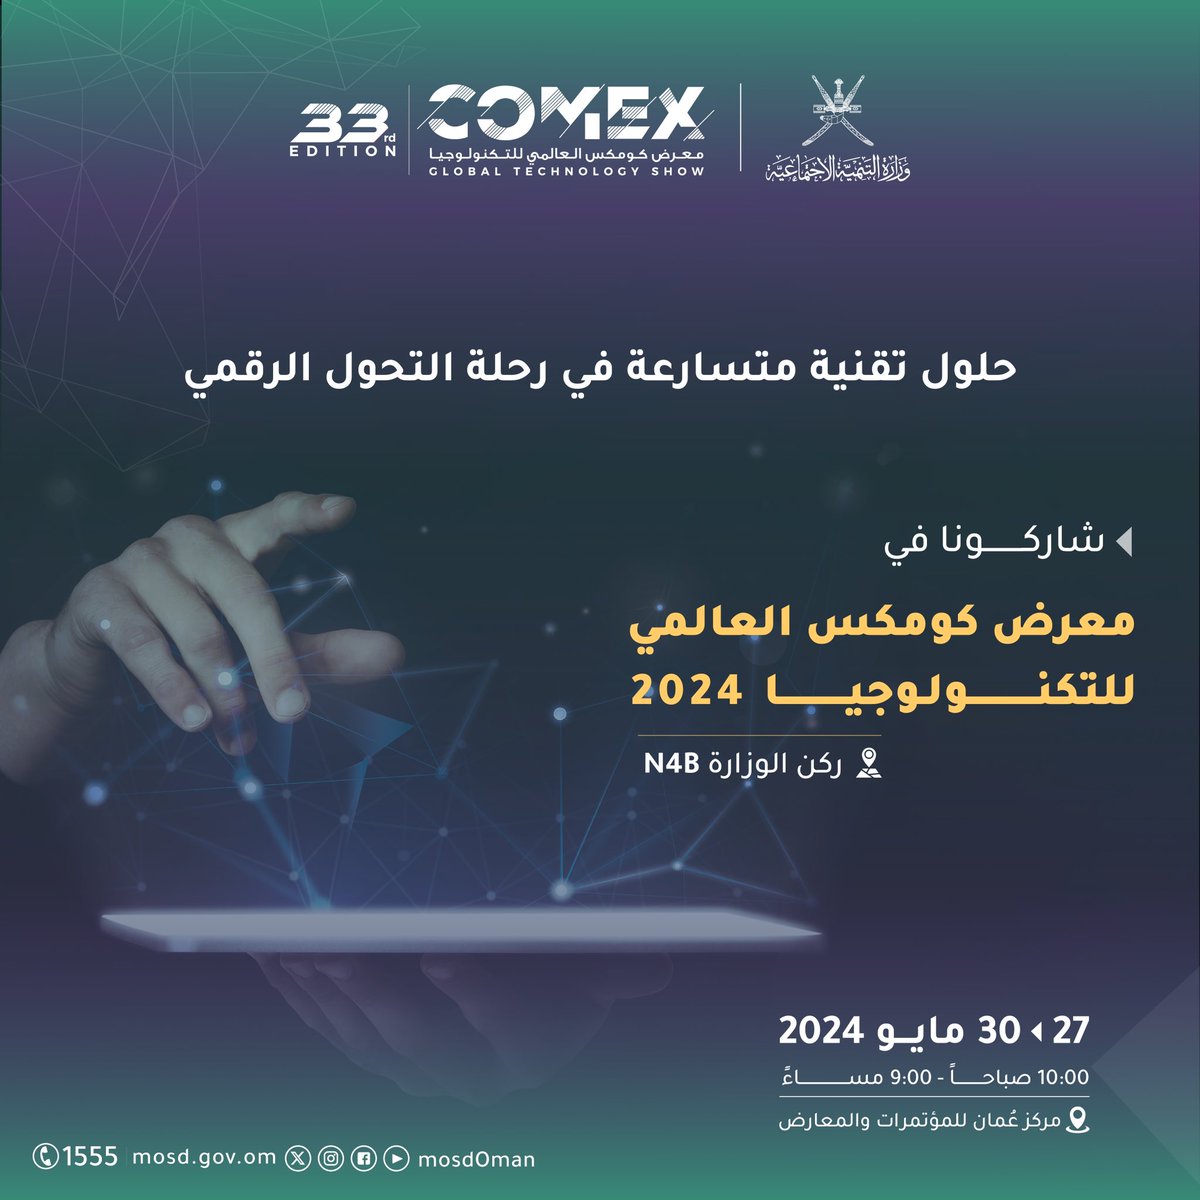 نسعد بصحبتكم في عالم تقني متسارع نحو التحول الرقمي. 📅 27 - 30 مايو 2024 📍 مركز عُمان للمؤتمرات والمعارض @OmanConvention #معرض_كومكس_العالمي_للتكنولوجيا_2024